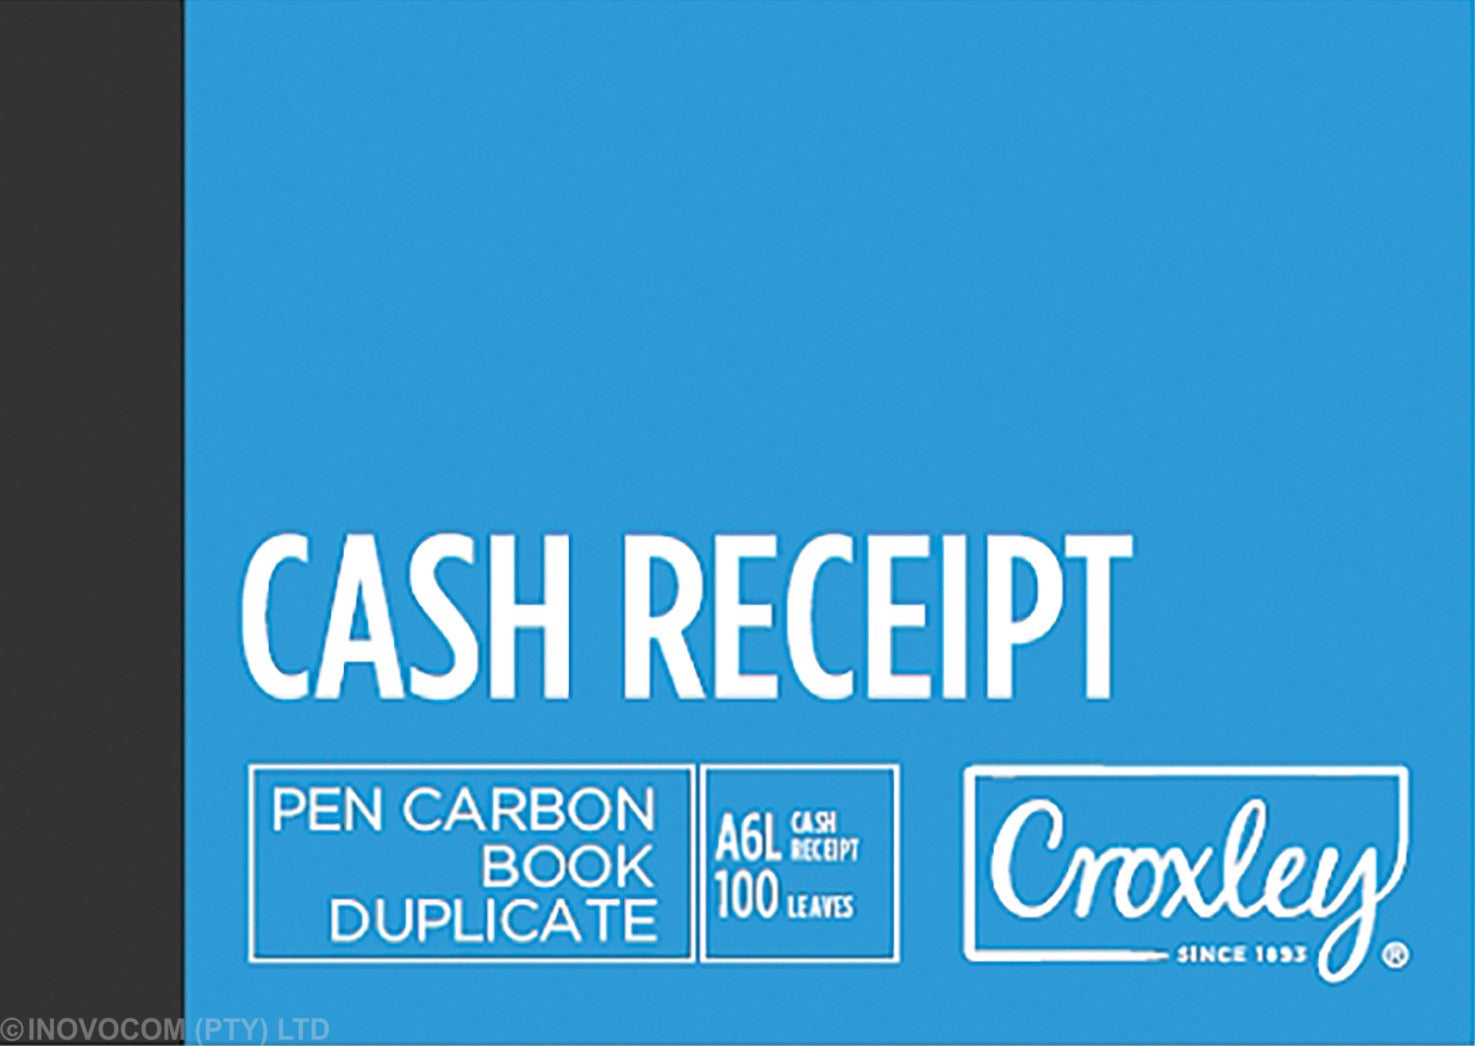 Croxley JD16C A6L Pen Carbon Book Cash Receipt Duplicate